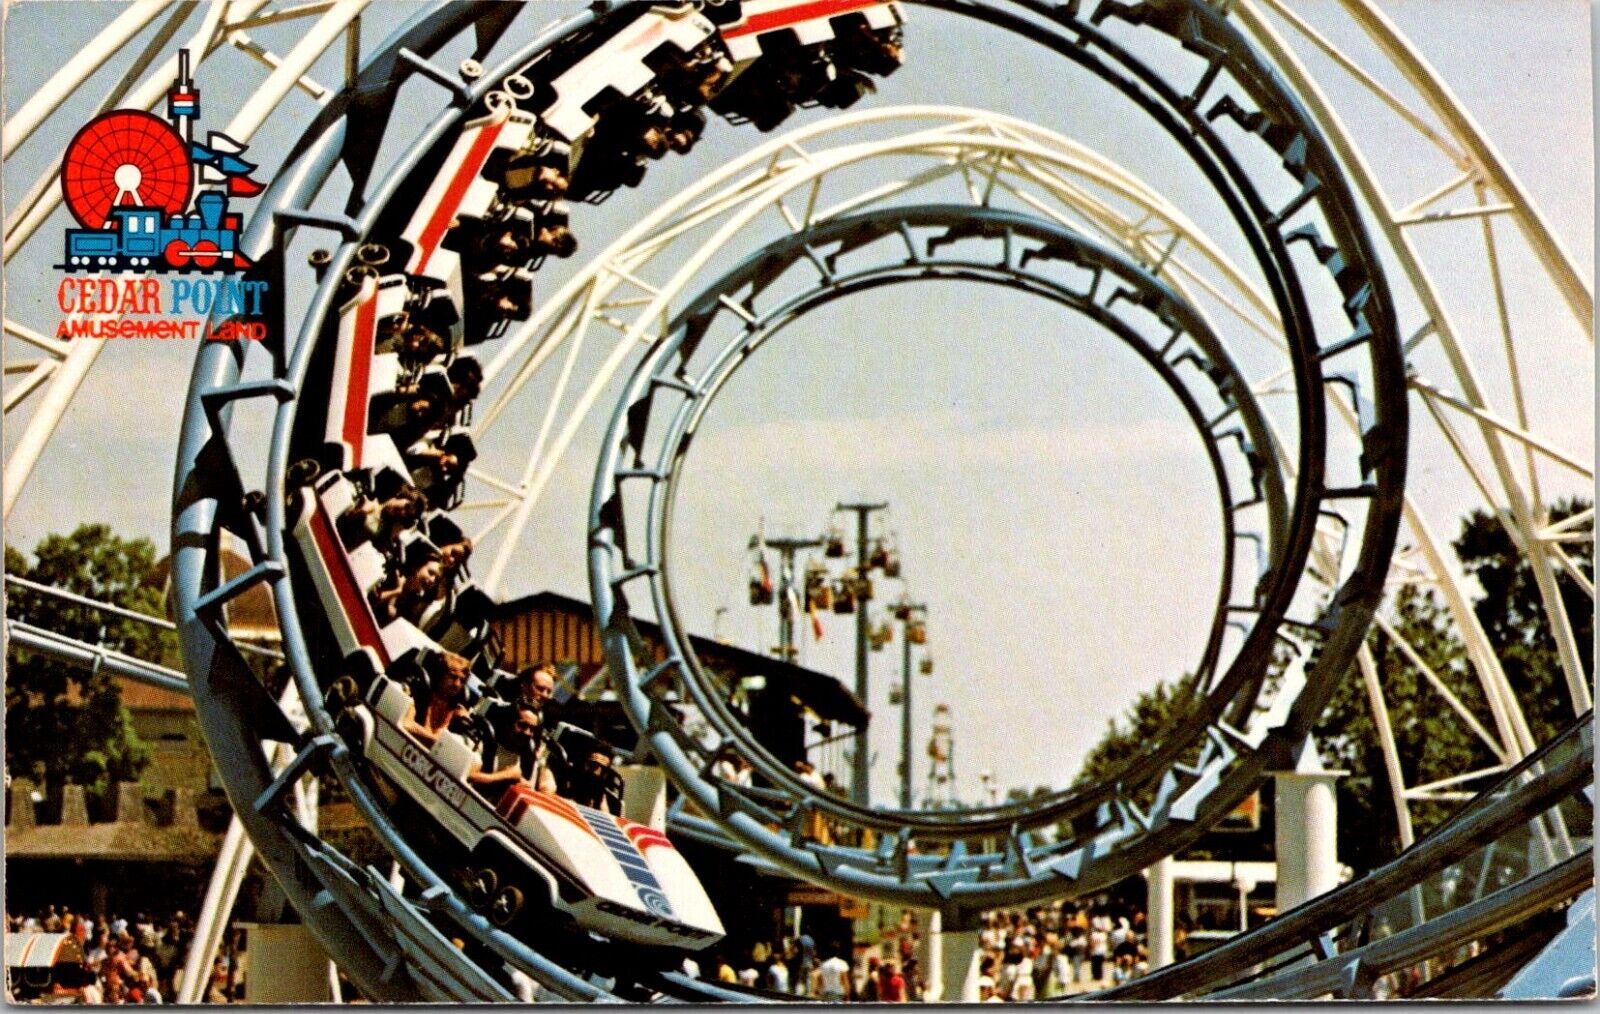 Sandusky Ohio OH Cedar Point Amusement Park Corkscrew Ride c1970s  Postcard